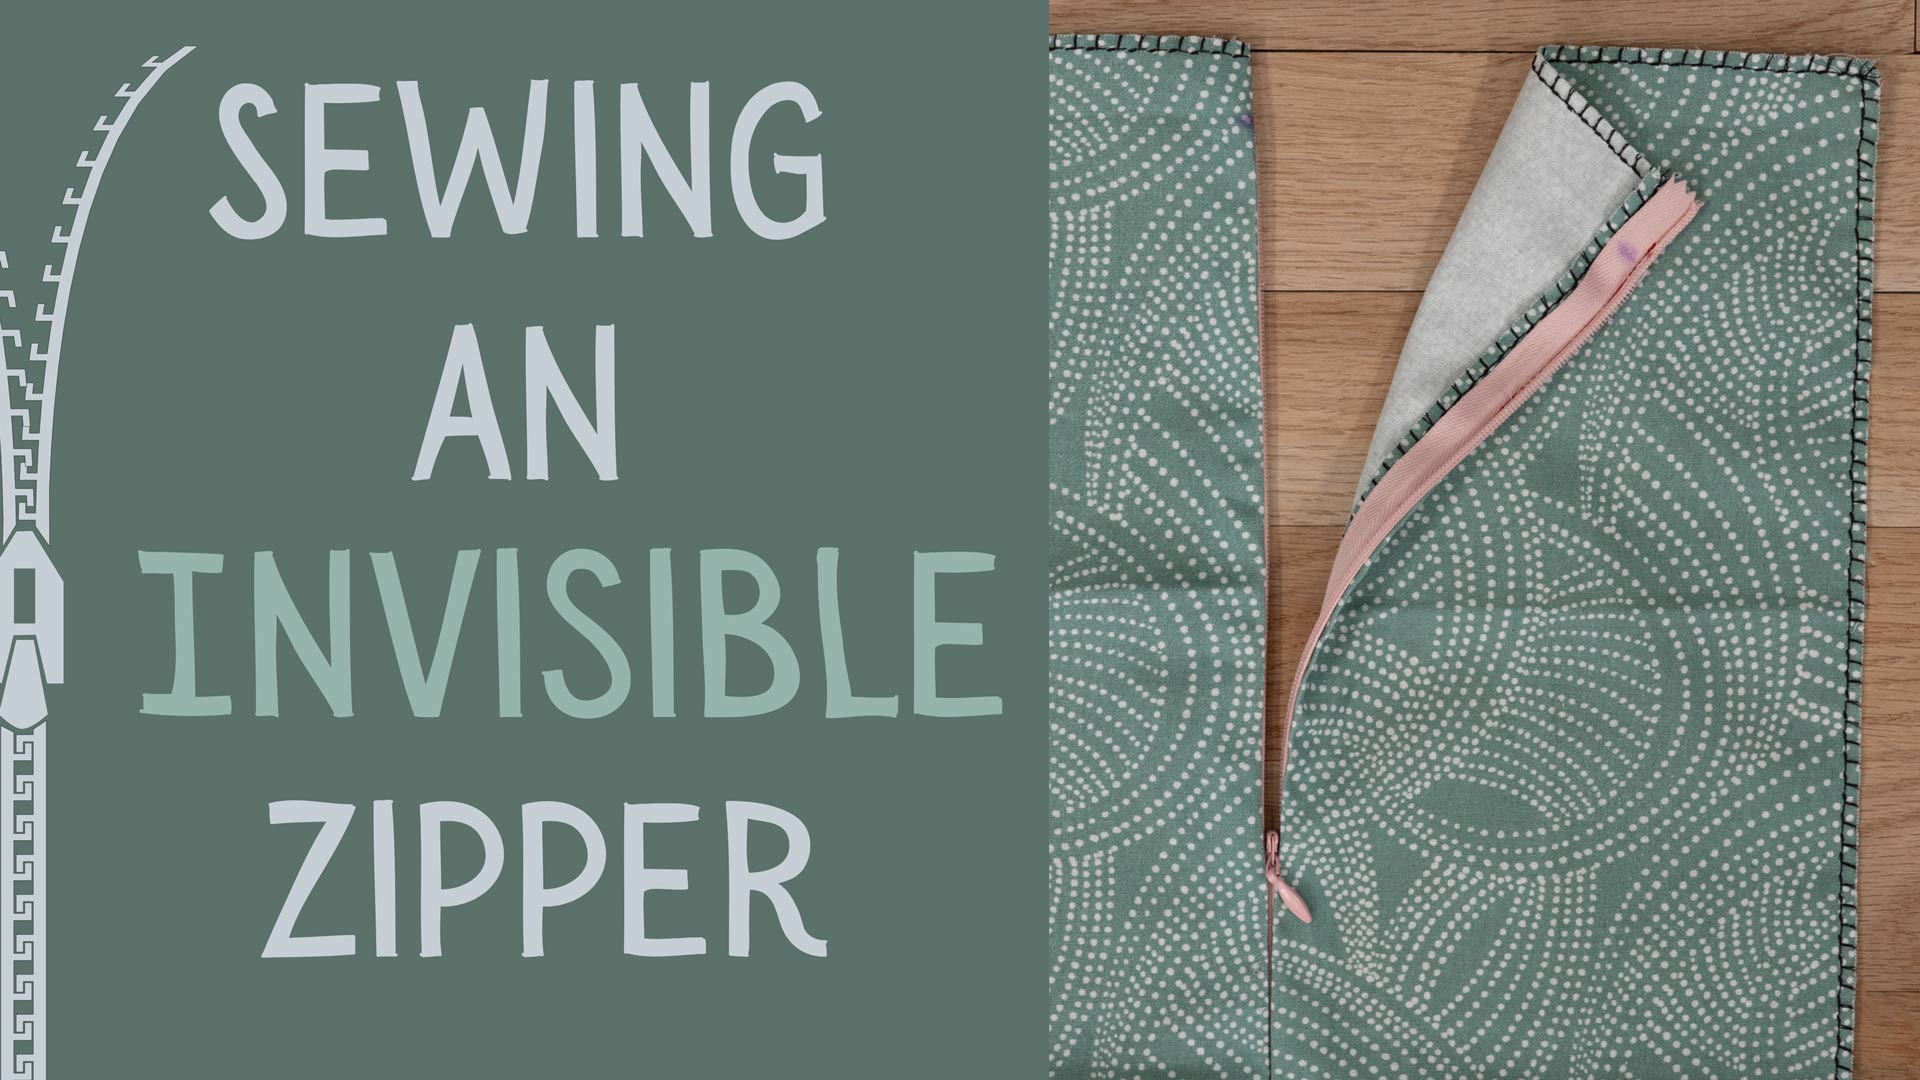 Invisible Zipper - Professor Pincushion